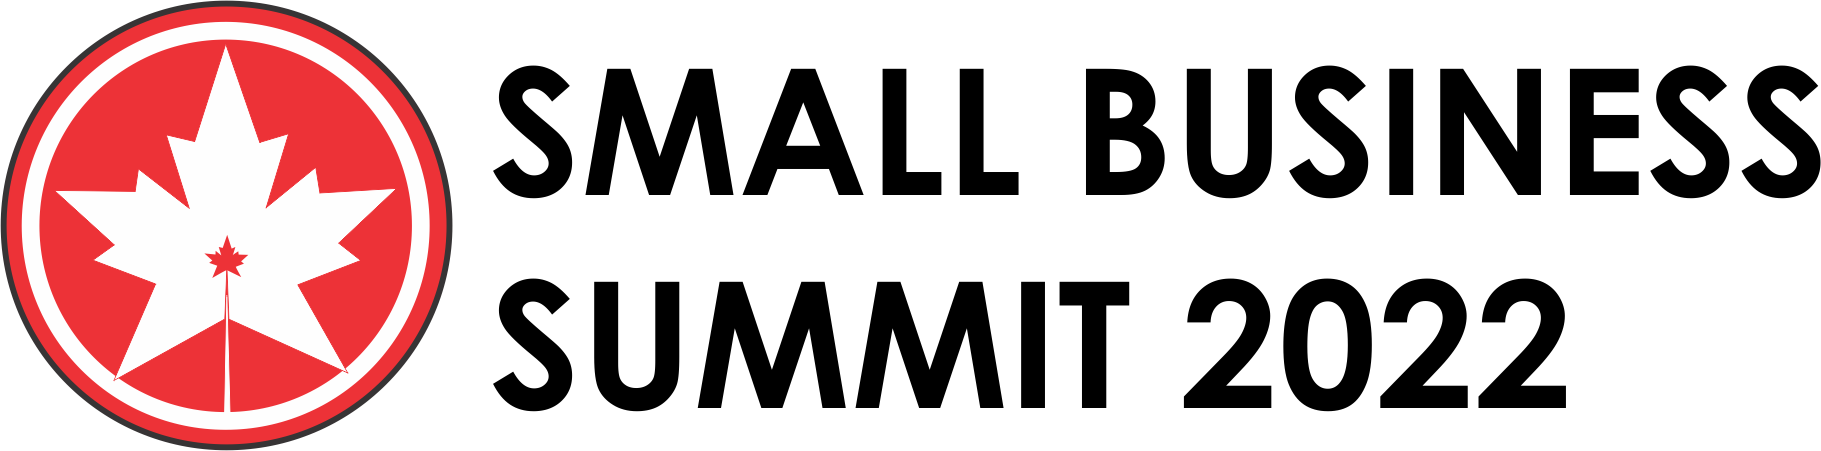 summit 2022 dark logo.png